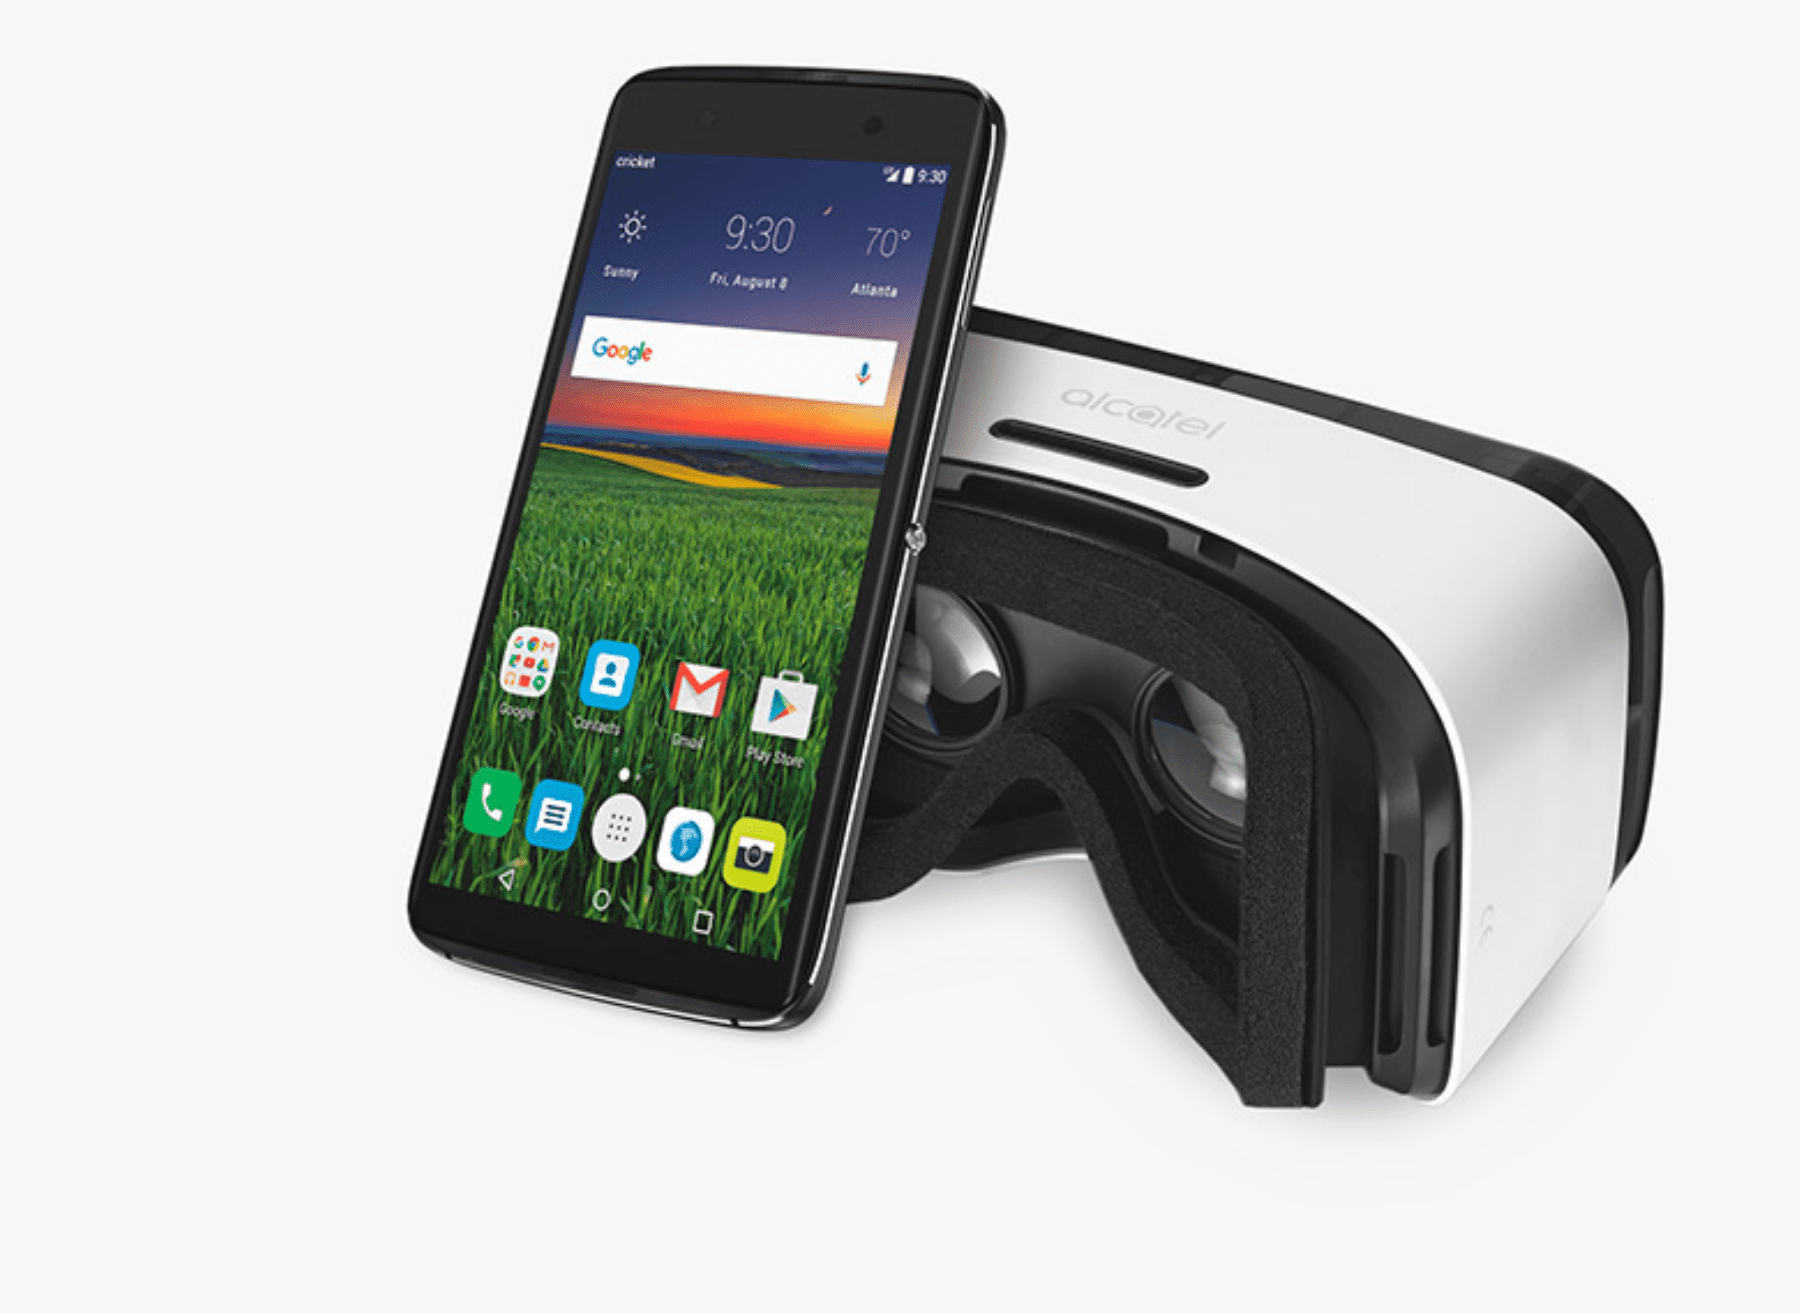 Telefon Alcatel One Touch Idol 4 vedle náhlavní soupravy VR